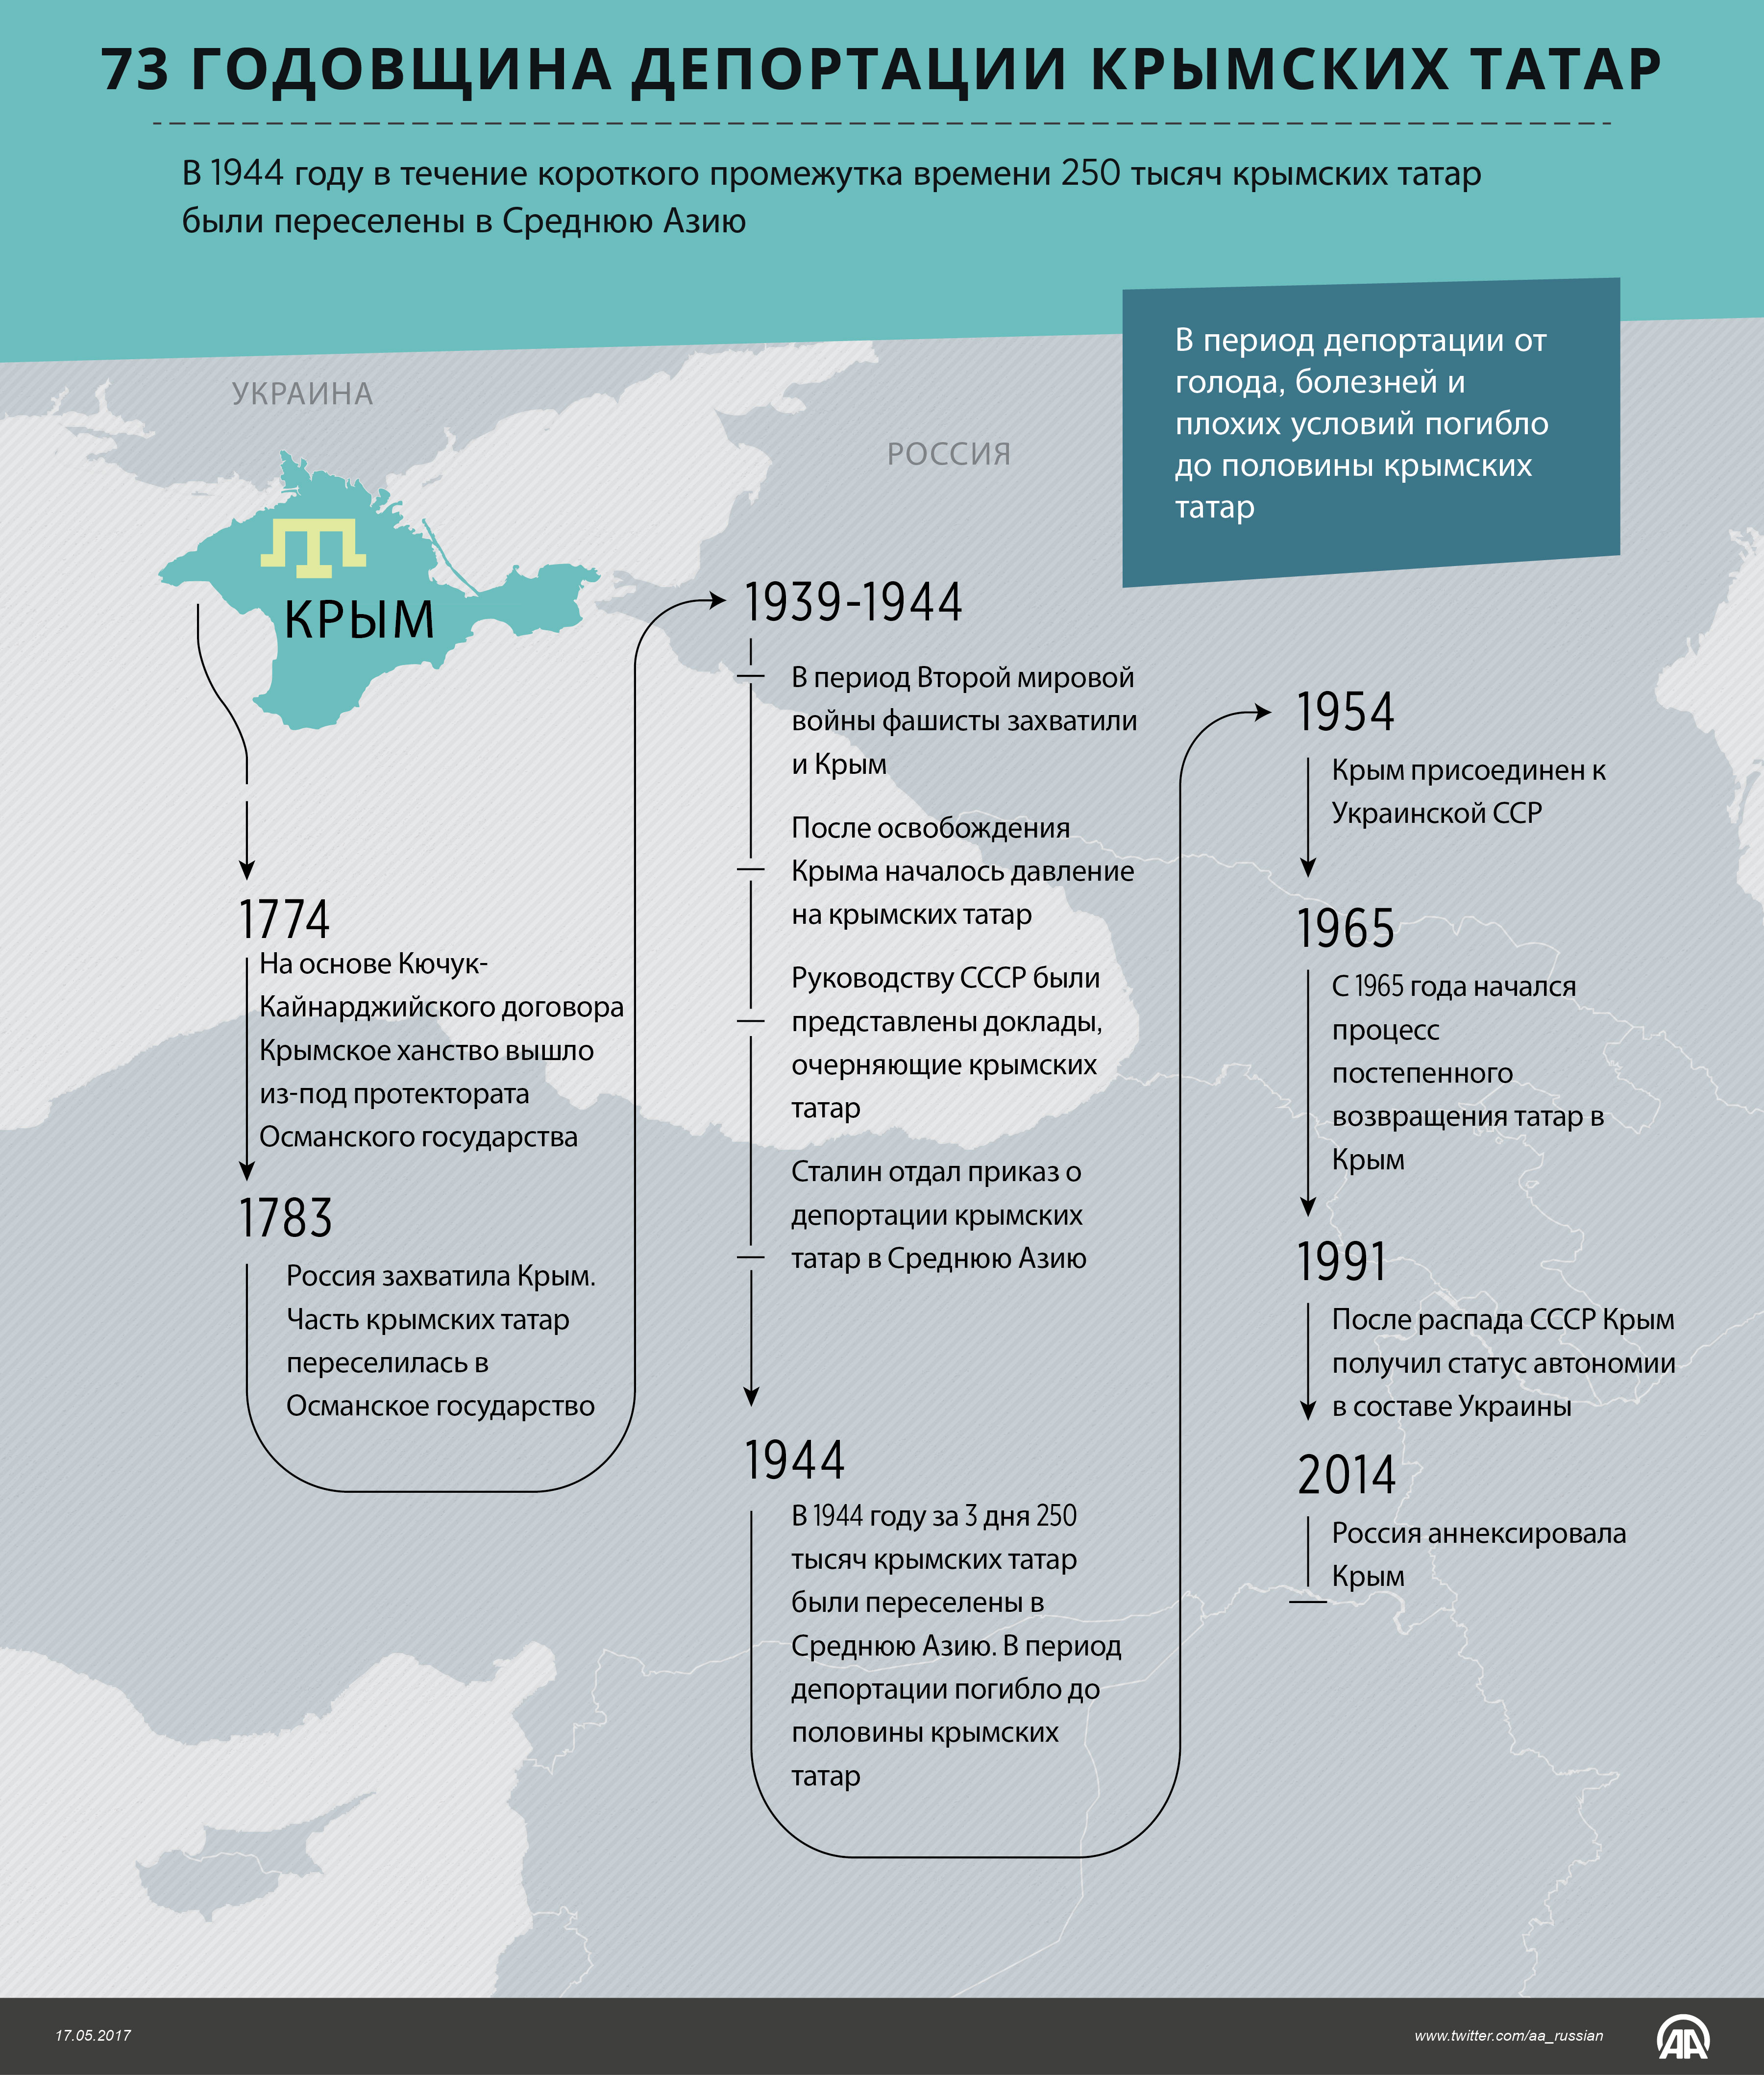 73 годовщина депортации крымских татар